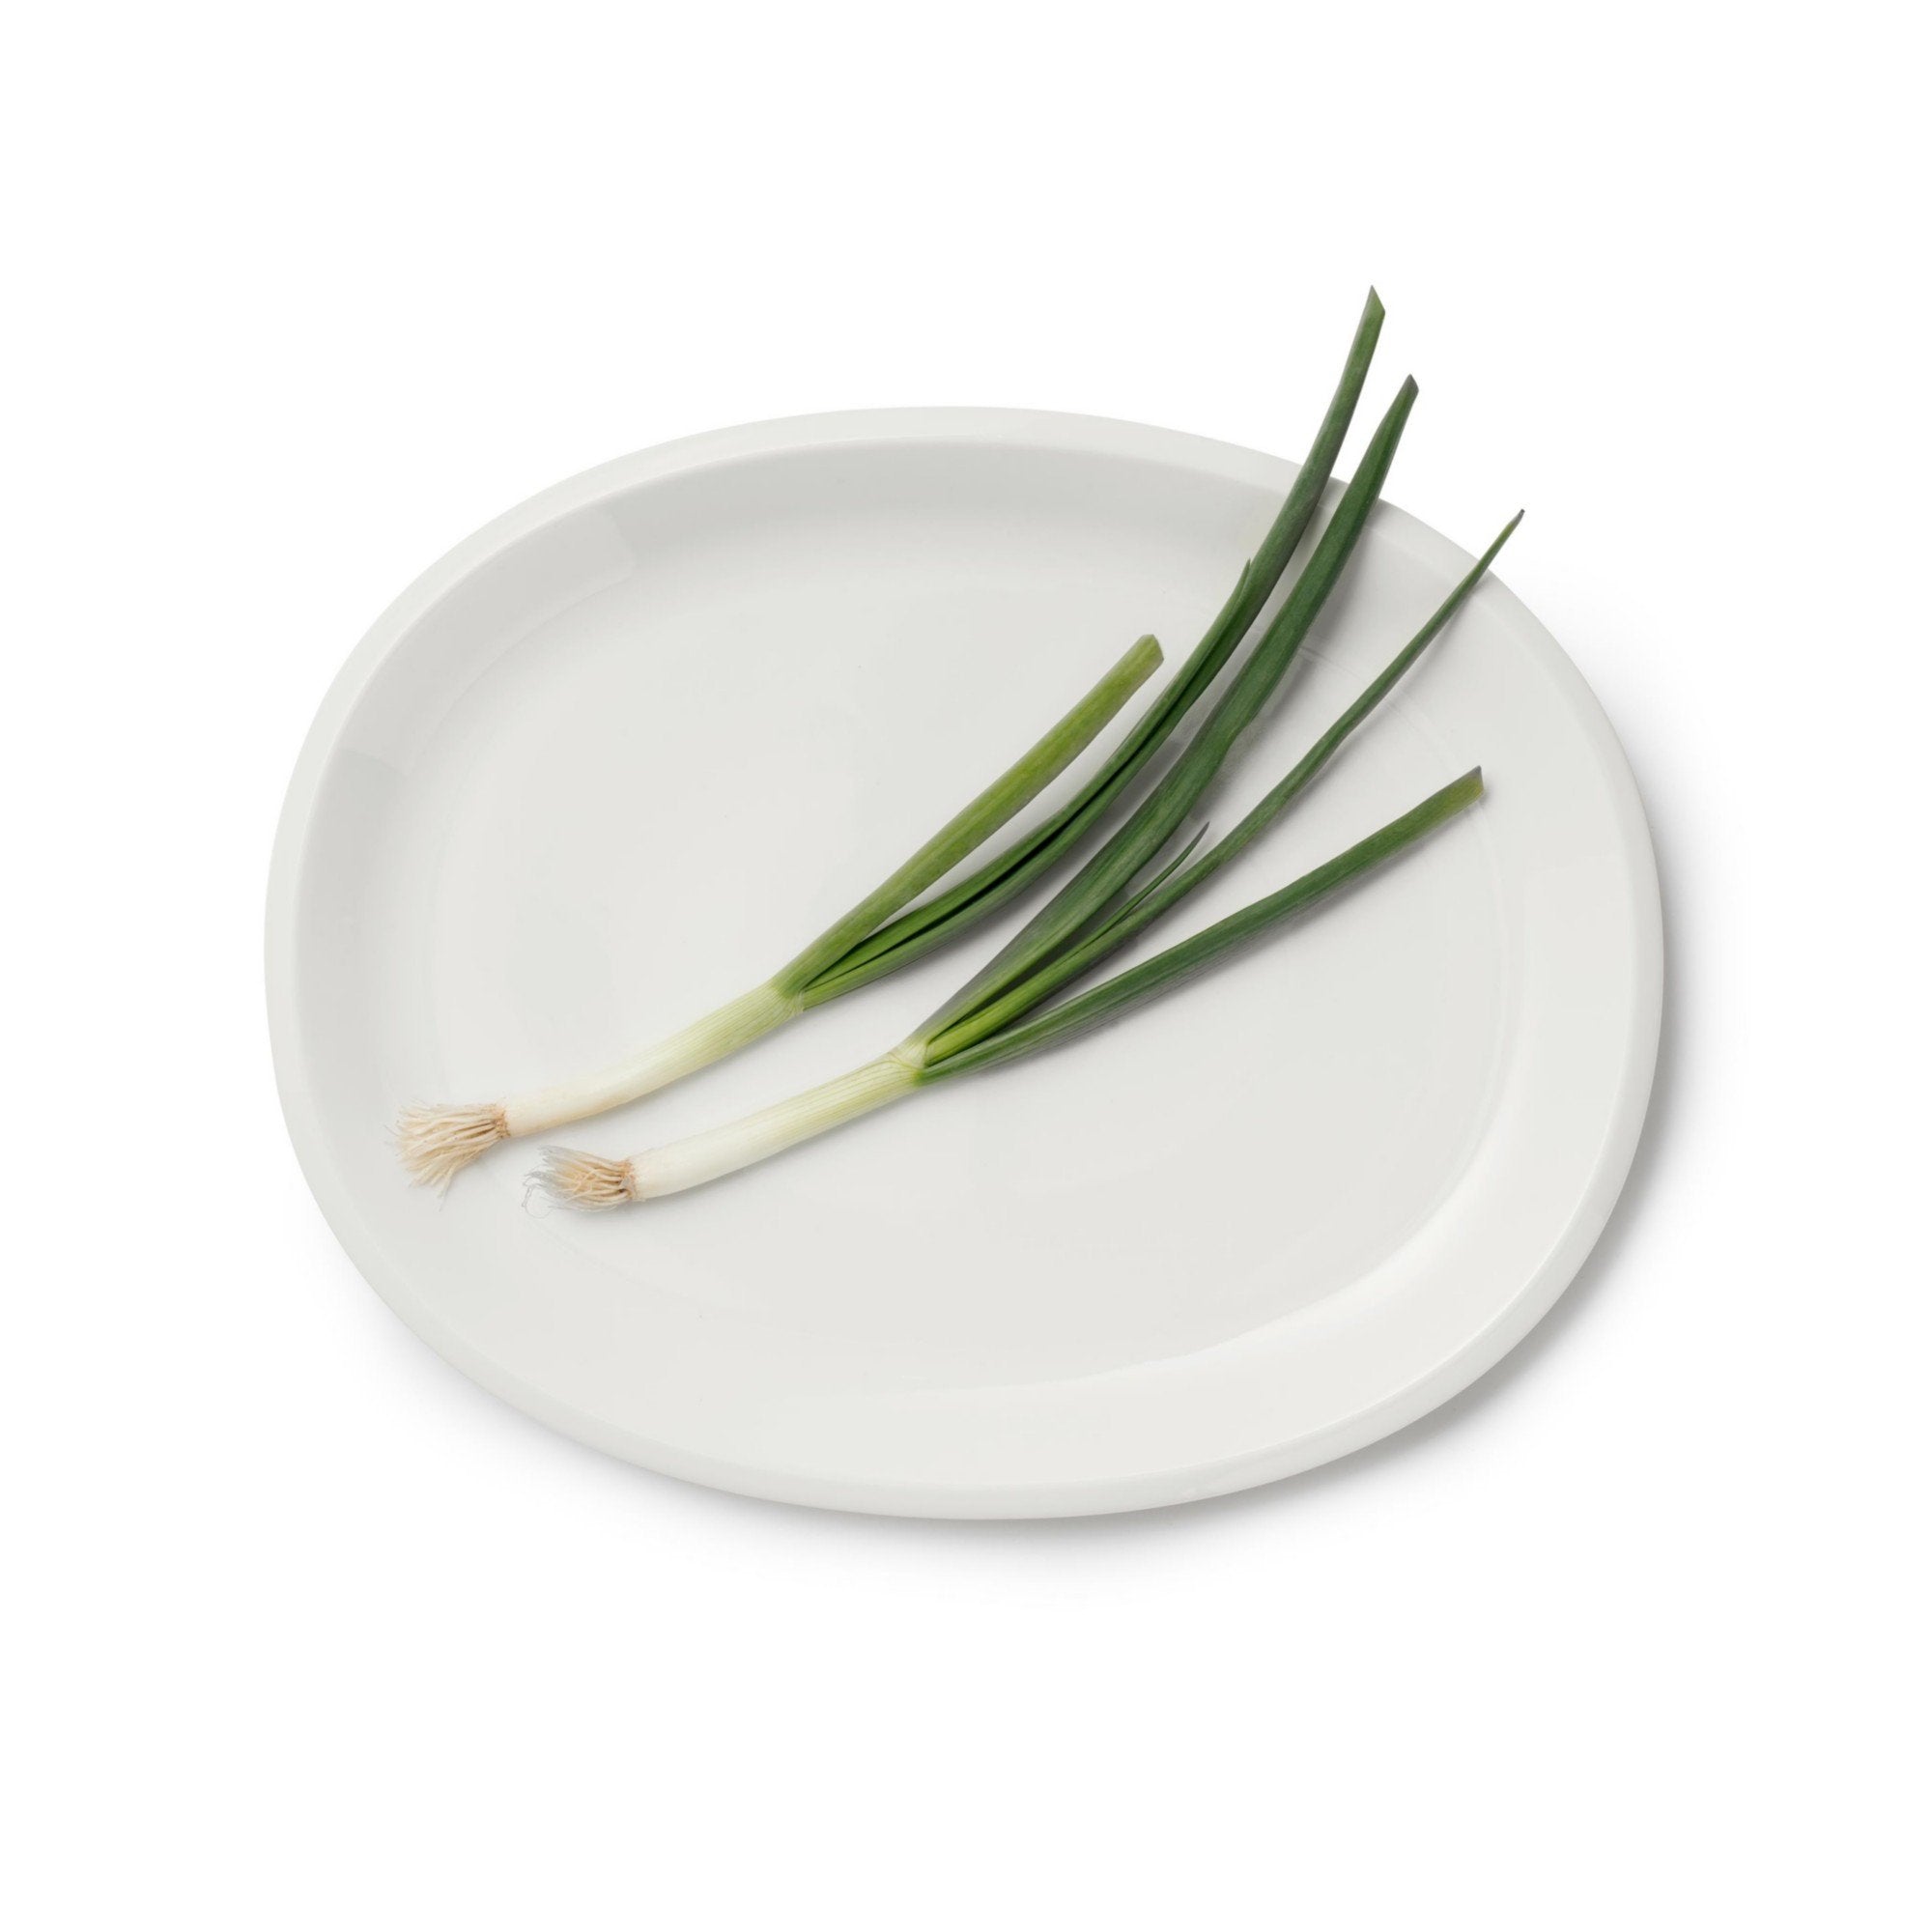 Iittala Raami serveringsplate hvit, 35cm